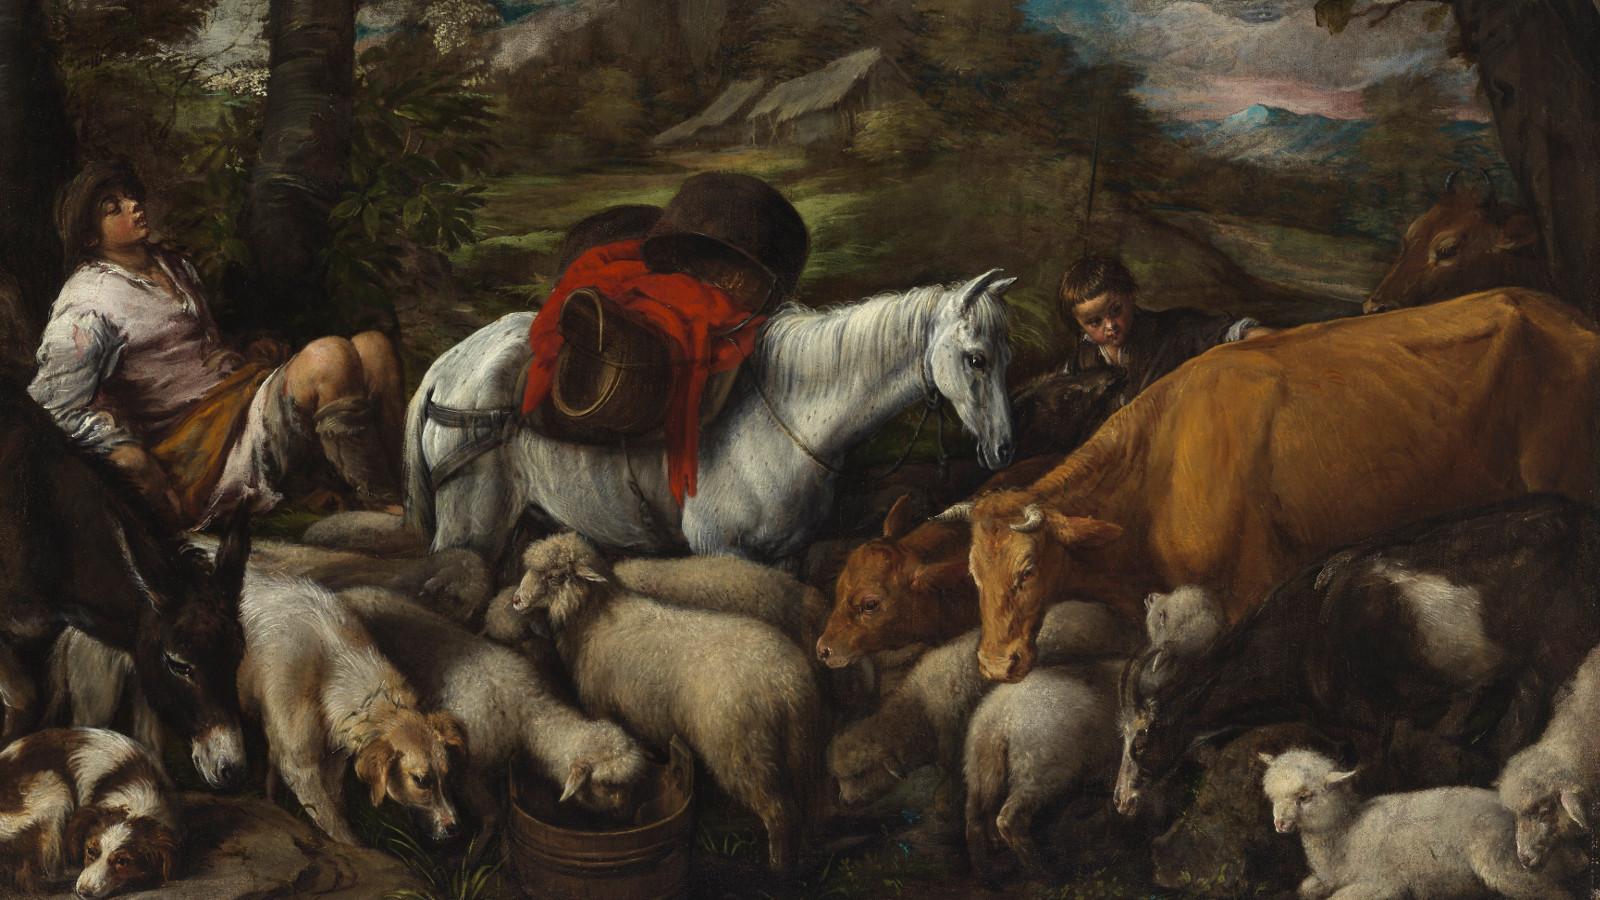 Kuvassa on alimpana lampaita ja keskellä on valkoinen hevonen ja vieressä ruskea lehmä. Lampaiden keskellä on ajokoira ja vieressä aasi. Paimen on vasemmalla nukkumassa puun juurella. Kuvan sävy on tumma.